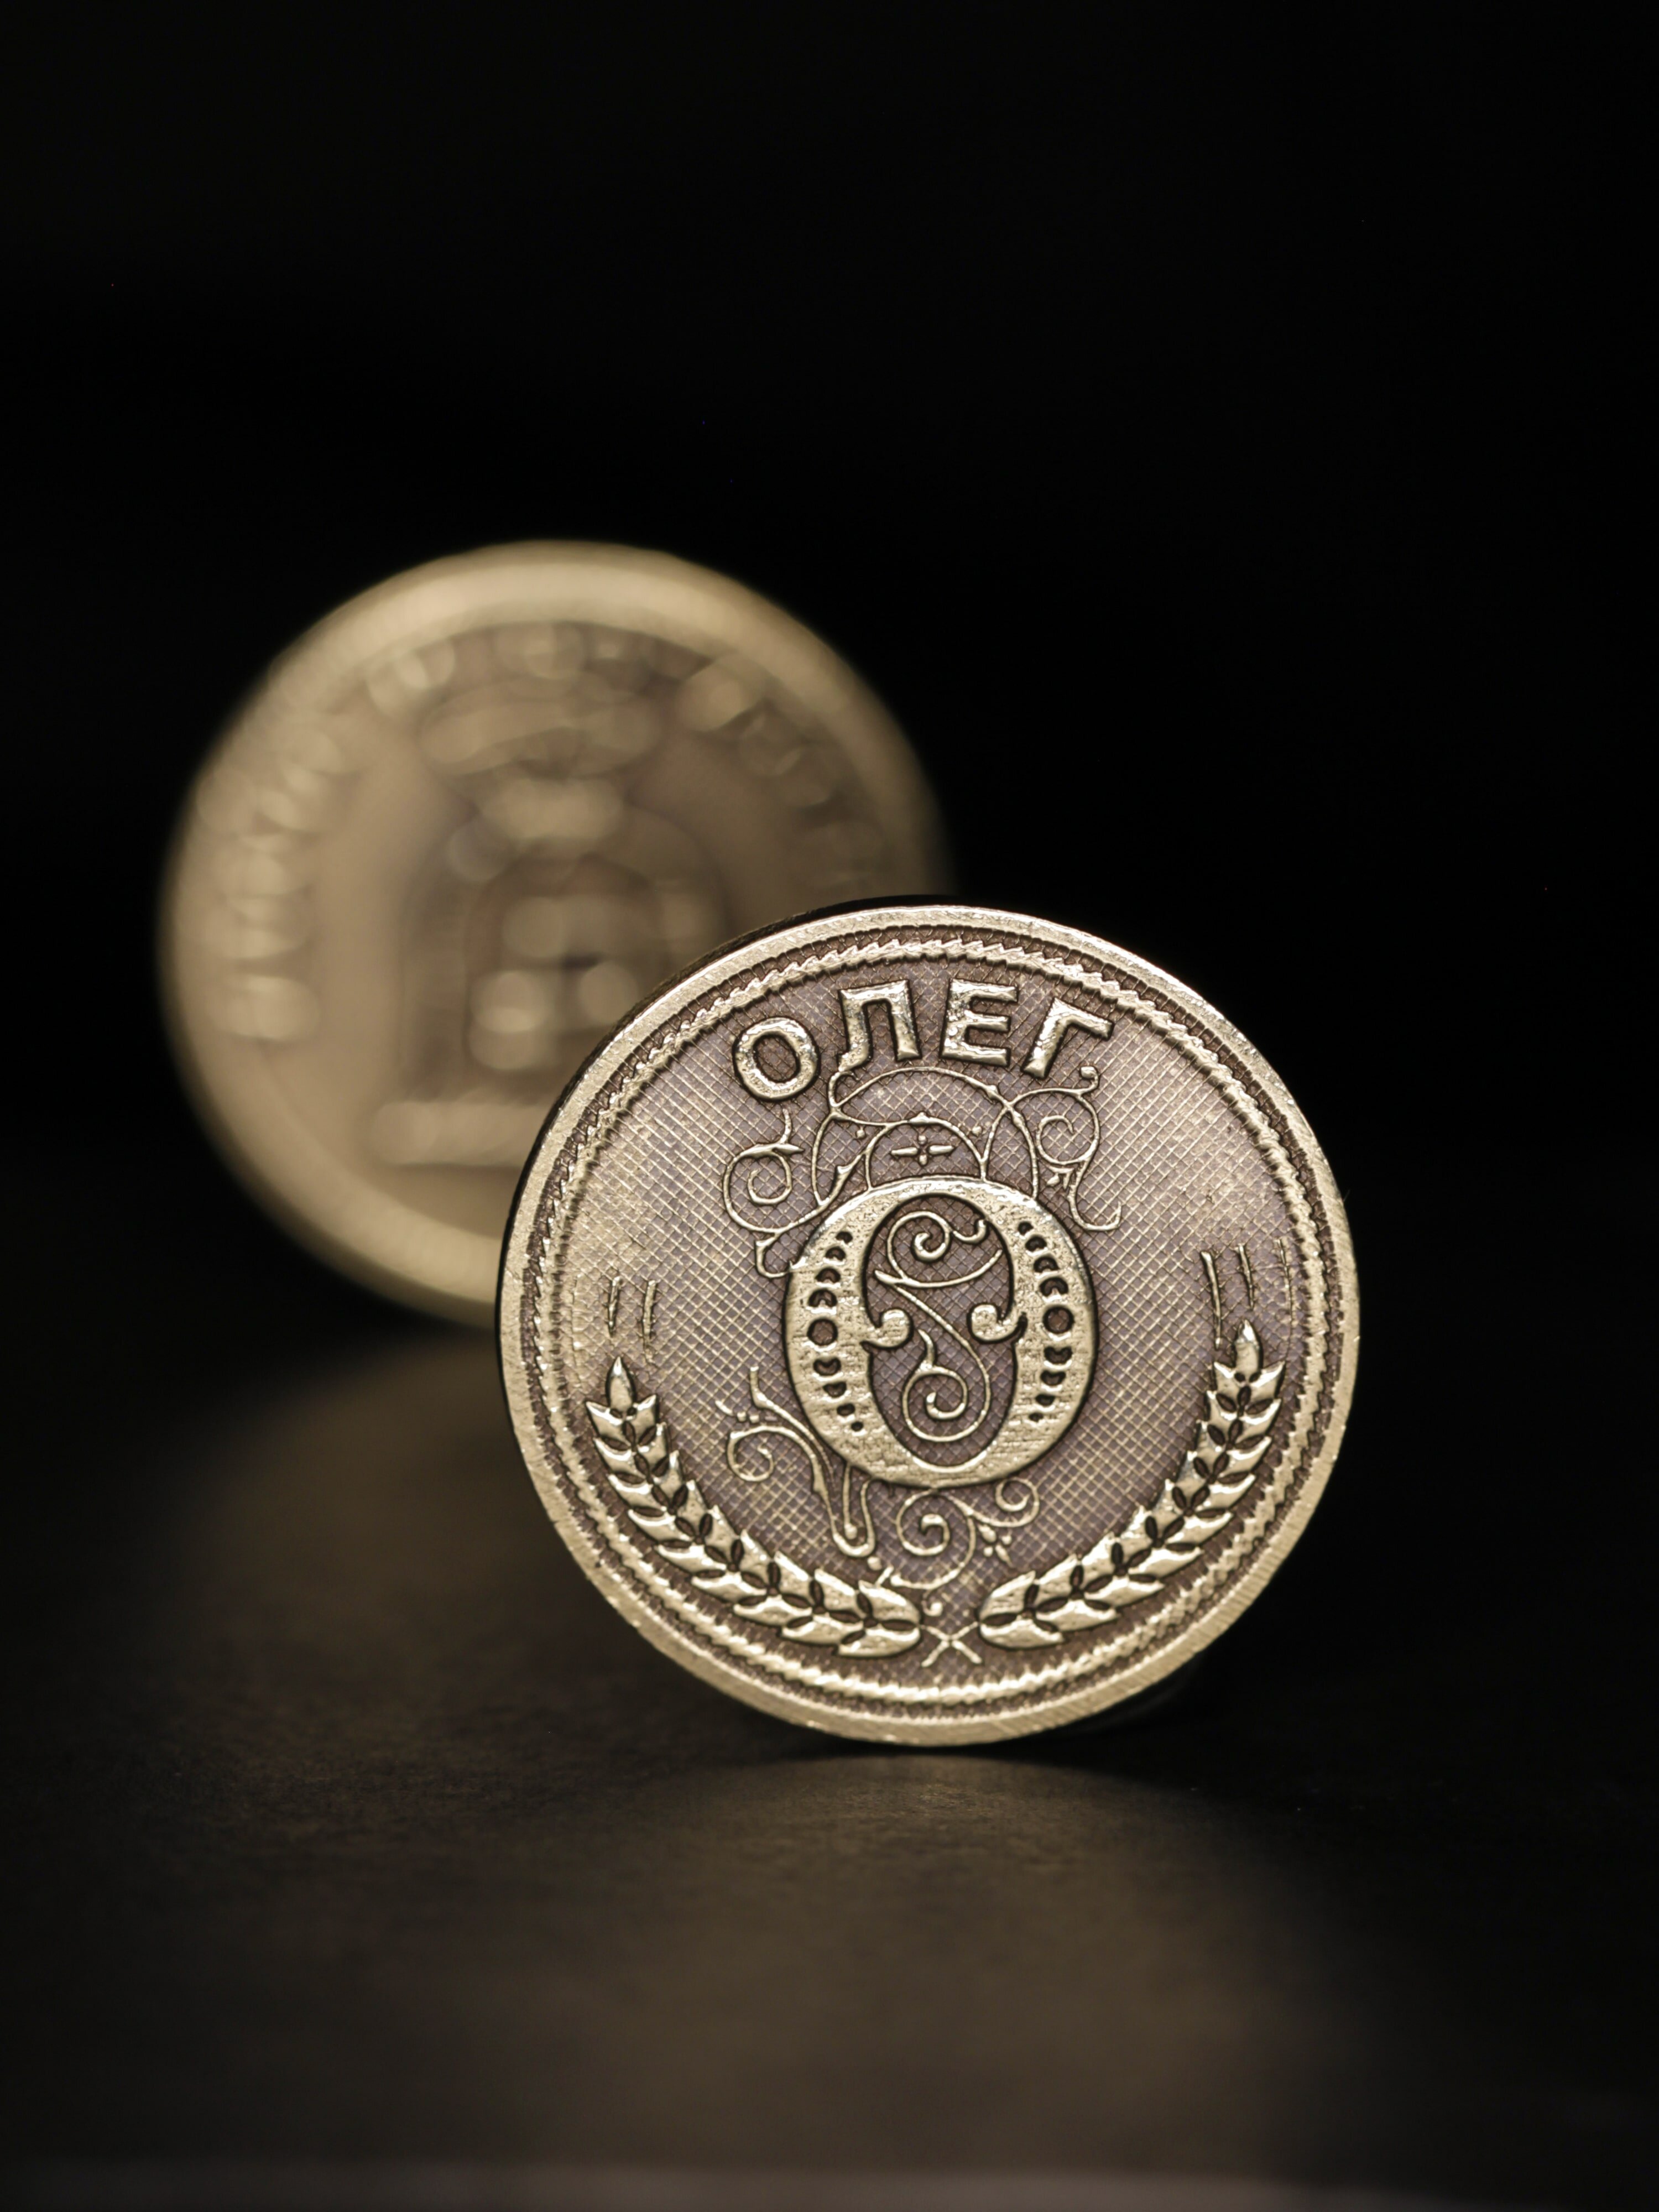 Именная оригинальна сувенирная монетка в подарок на богатство и удачу мужчине или мальчику - Олег - фотография № 1